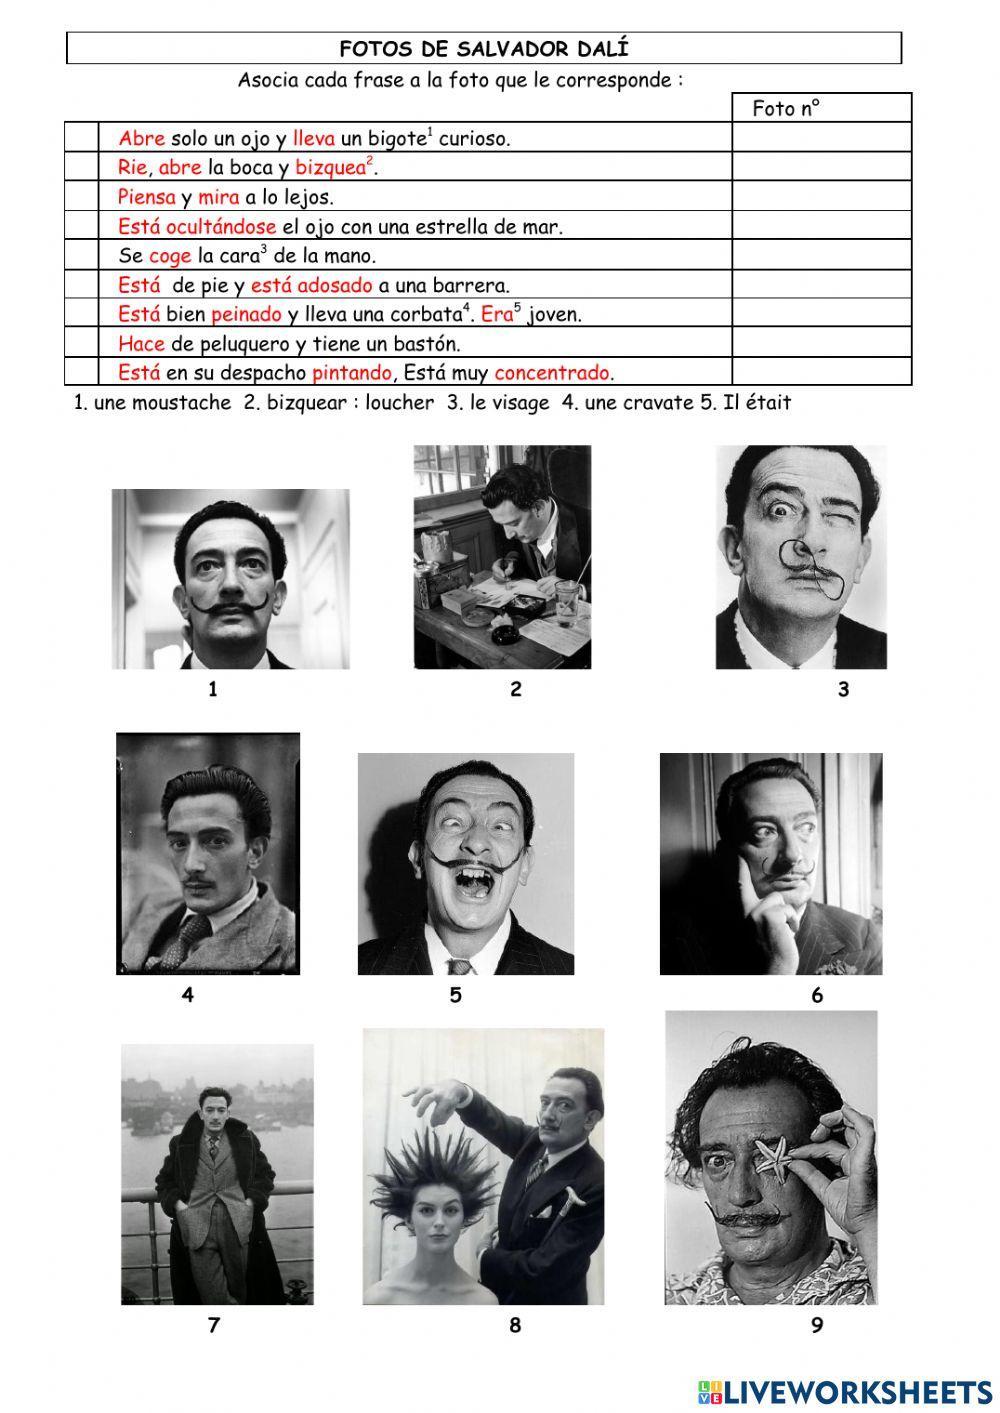 Las fotos de Salvador Dalí